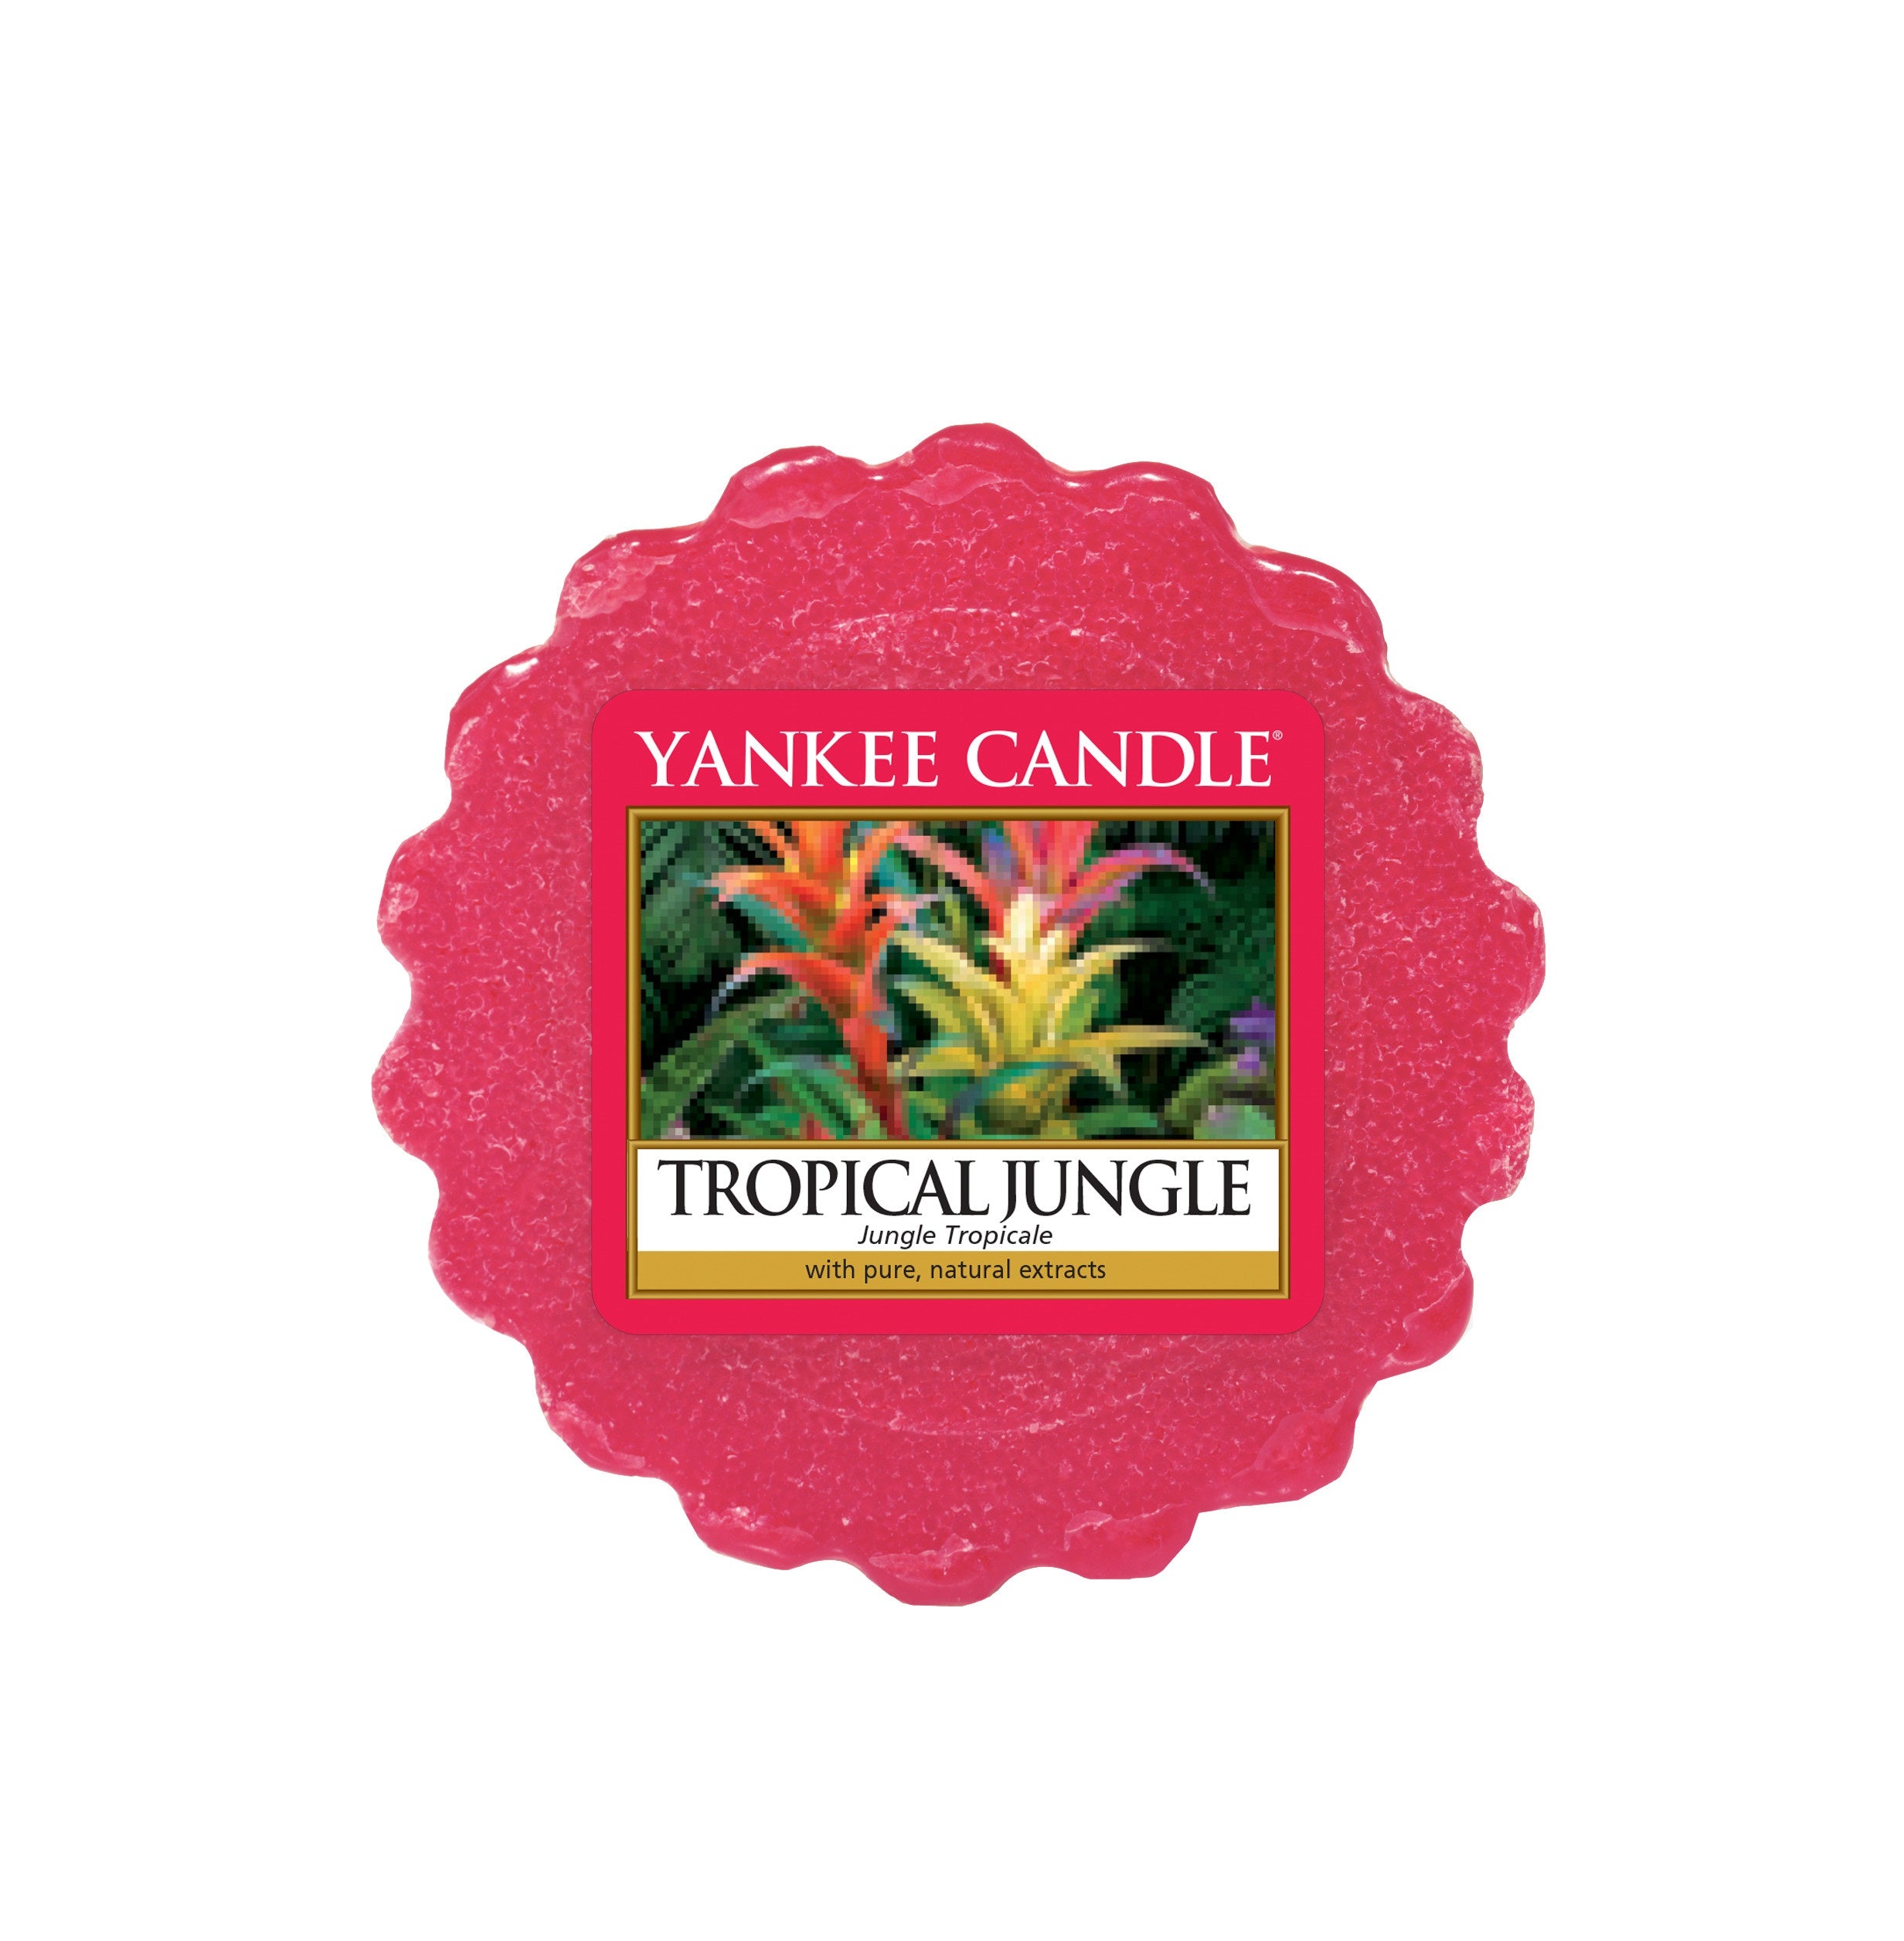 TROPICAL JUNGLE -Yankee Candle- Tart